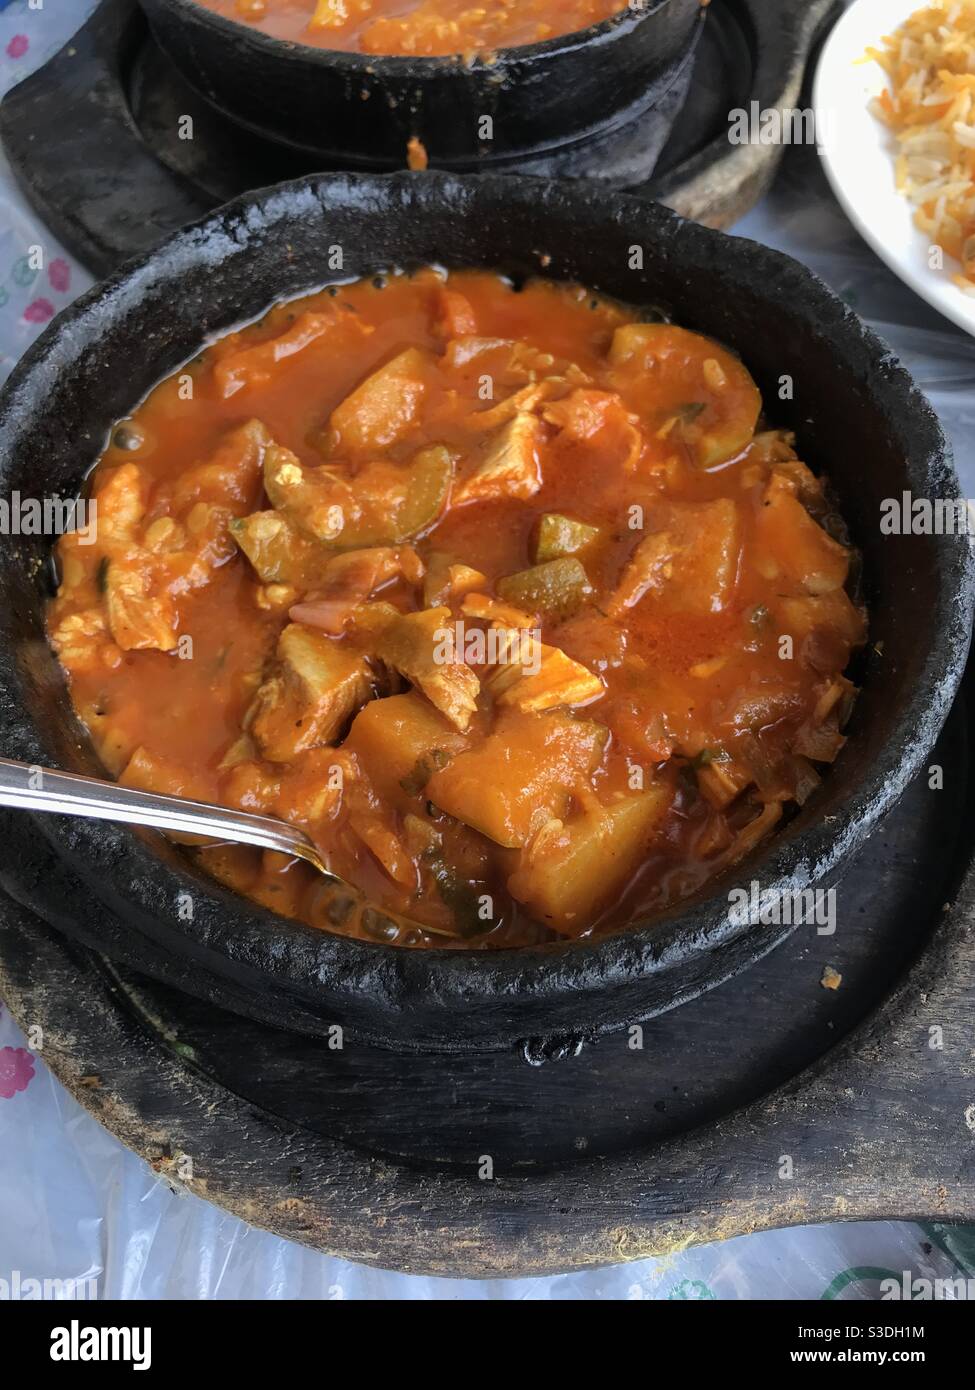 Imagen de primer plano de un plato recién preparado de pollo ogdat Estofado servido en un restaurante yemení Foto de stock